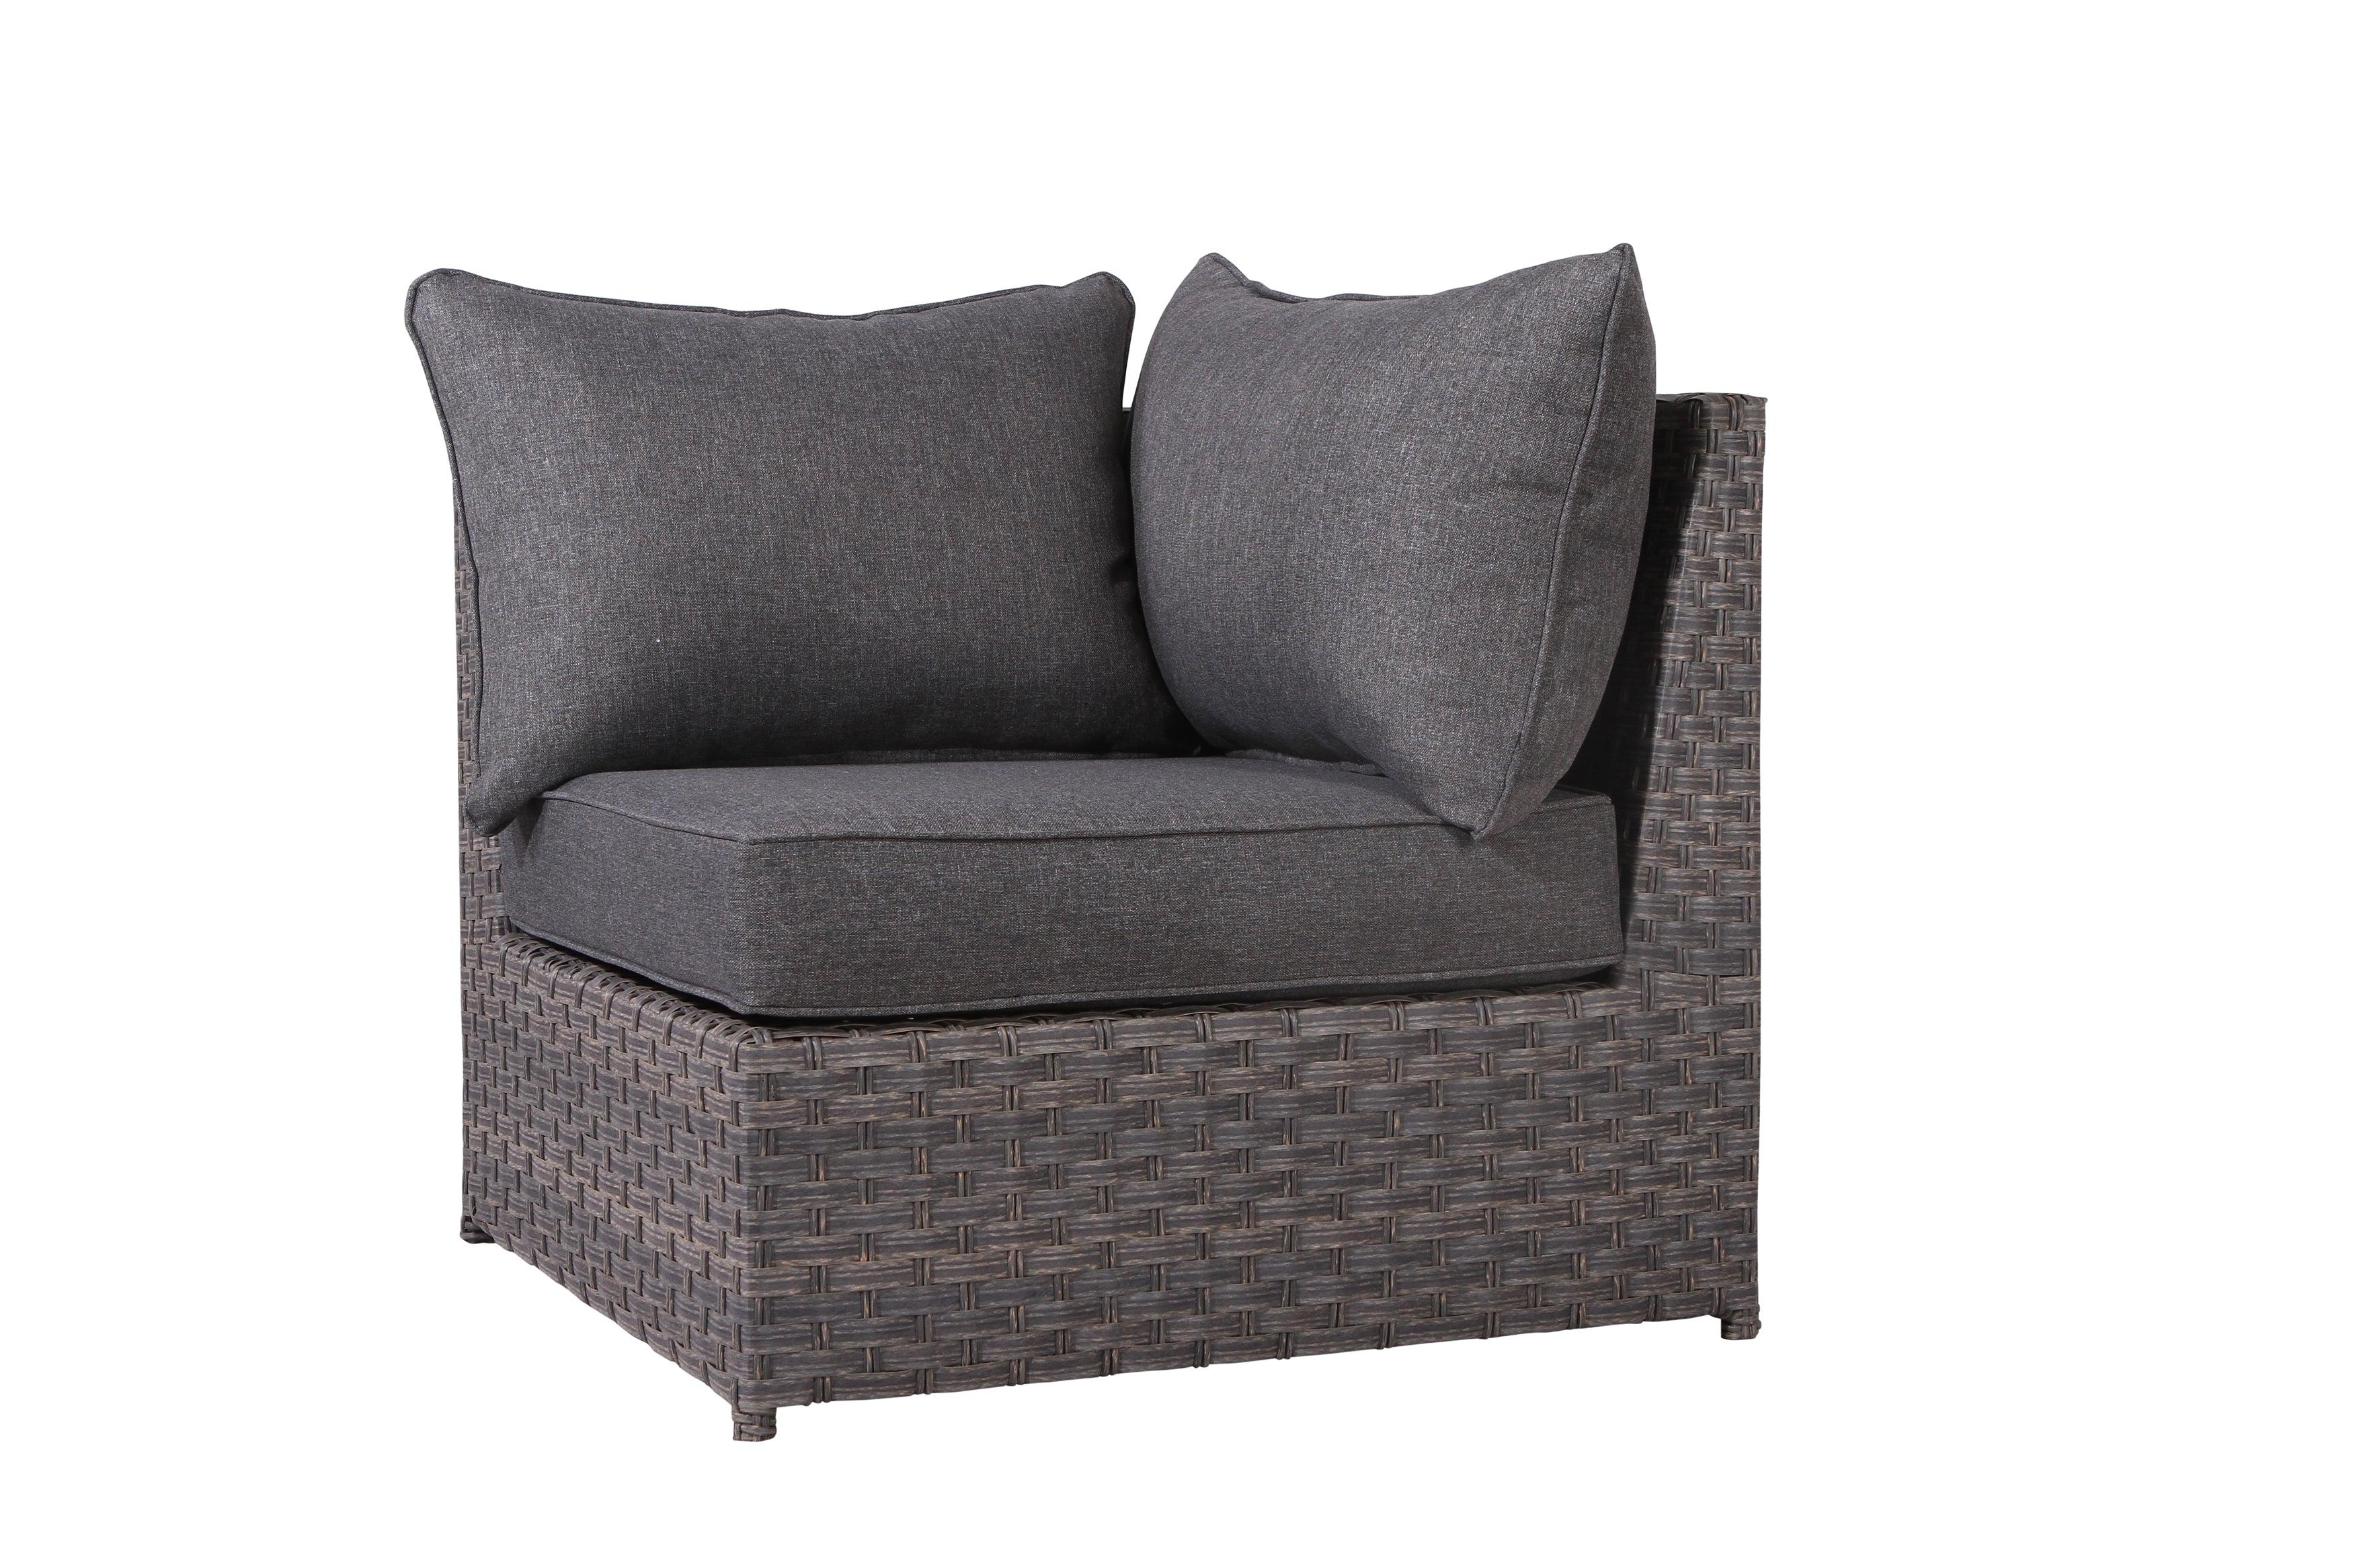 Cromwell Dark Grey Sofa Seat Cushion - SunHaven Home